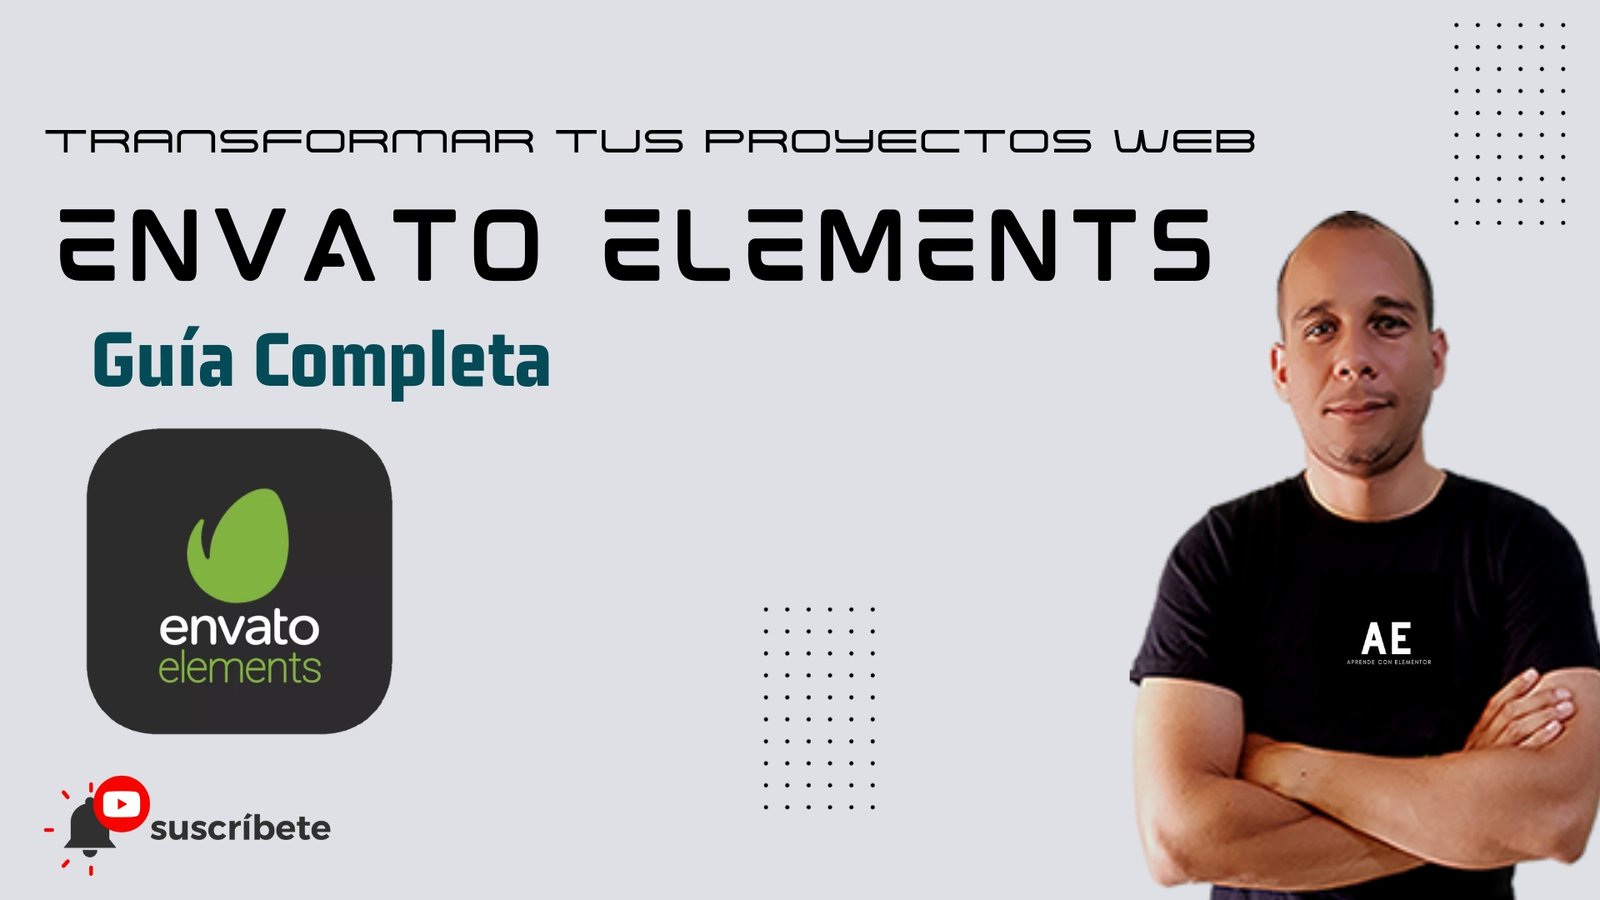 Cómo Envato Elements Puede Transformar tus Proyectos Web: ¡Guía Completa!